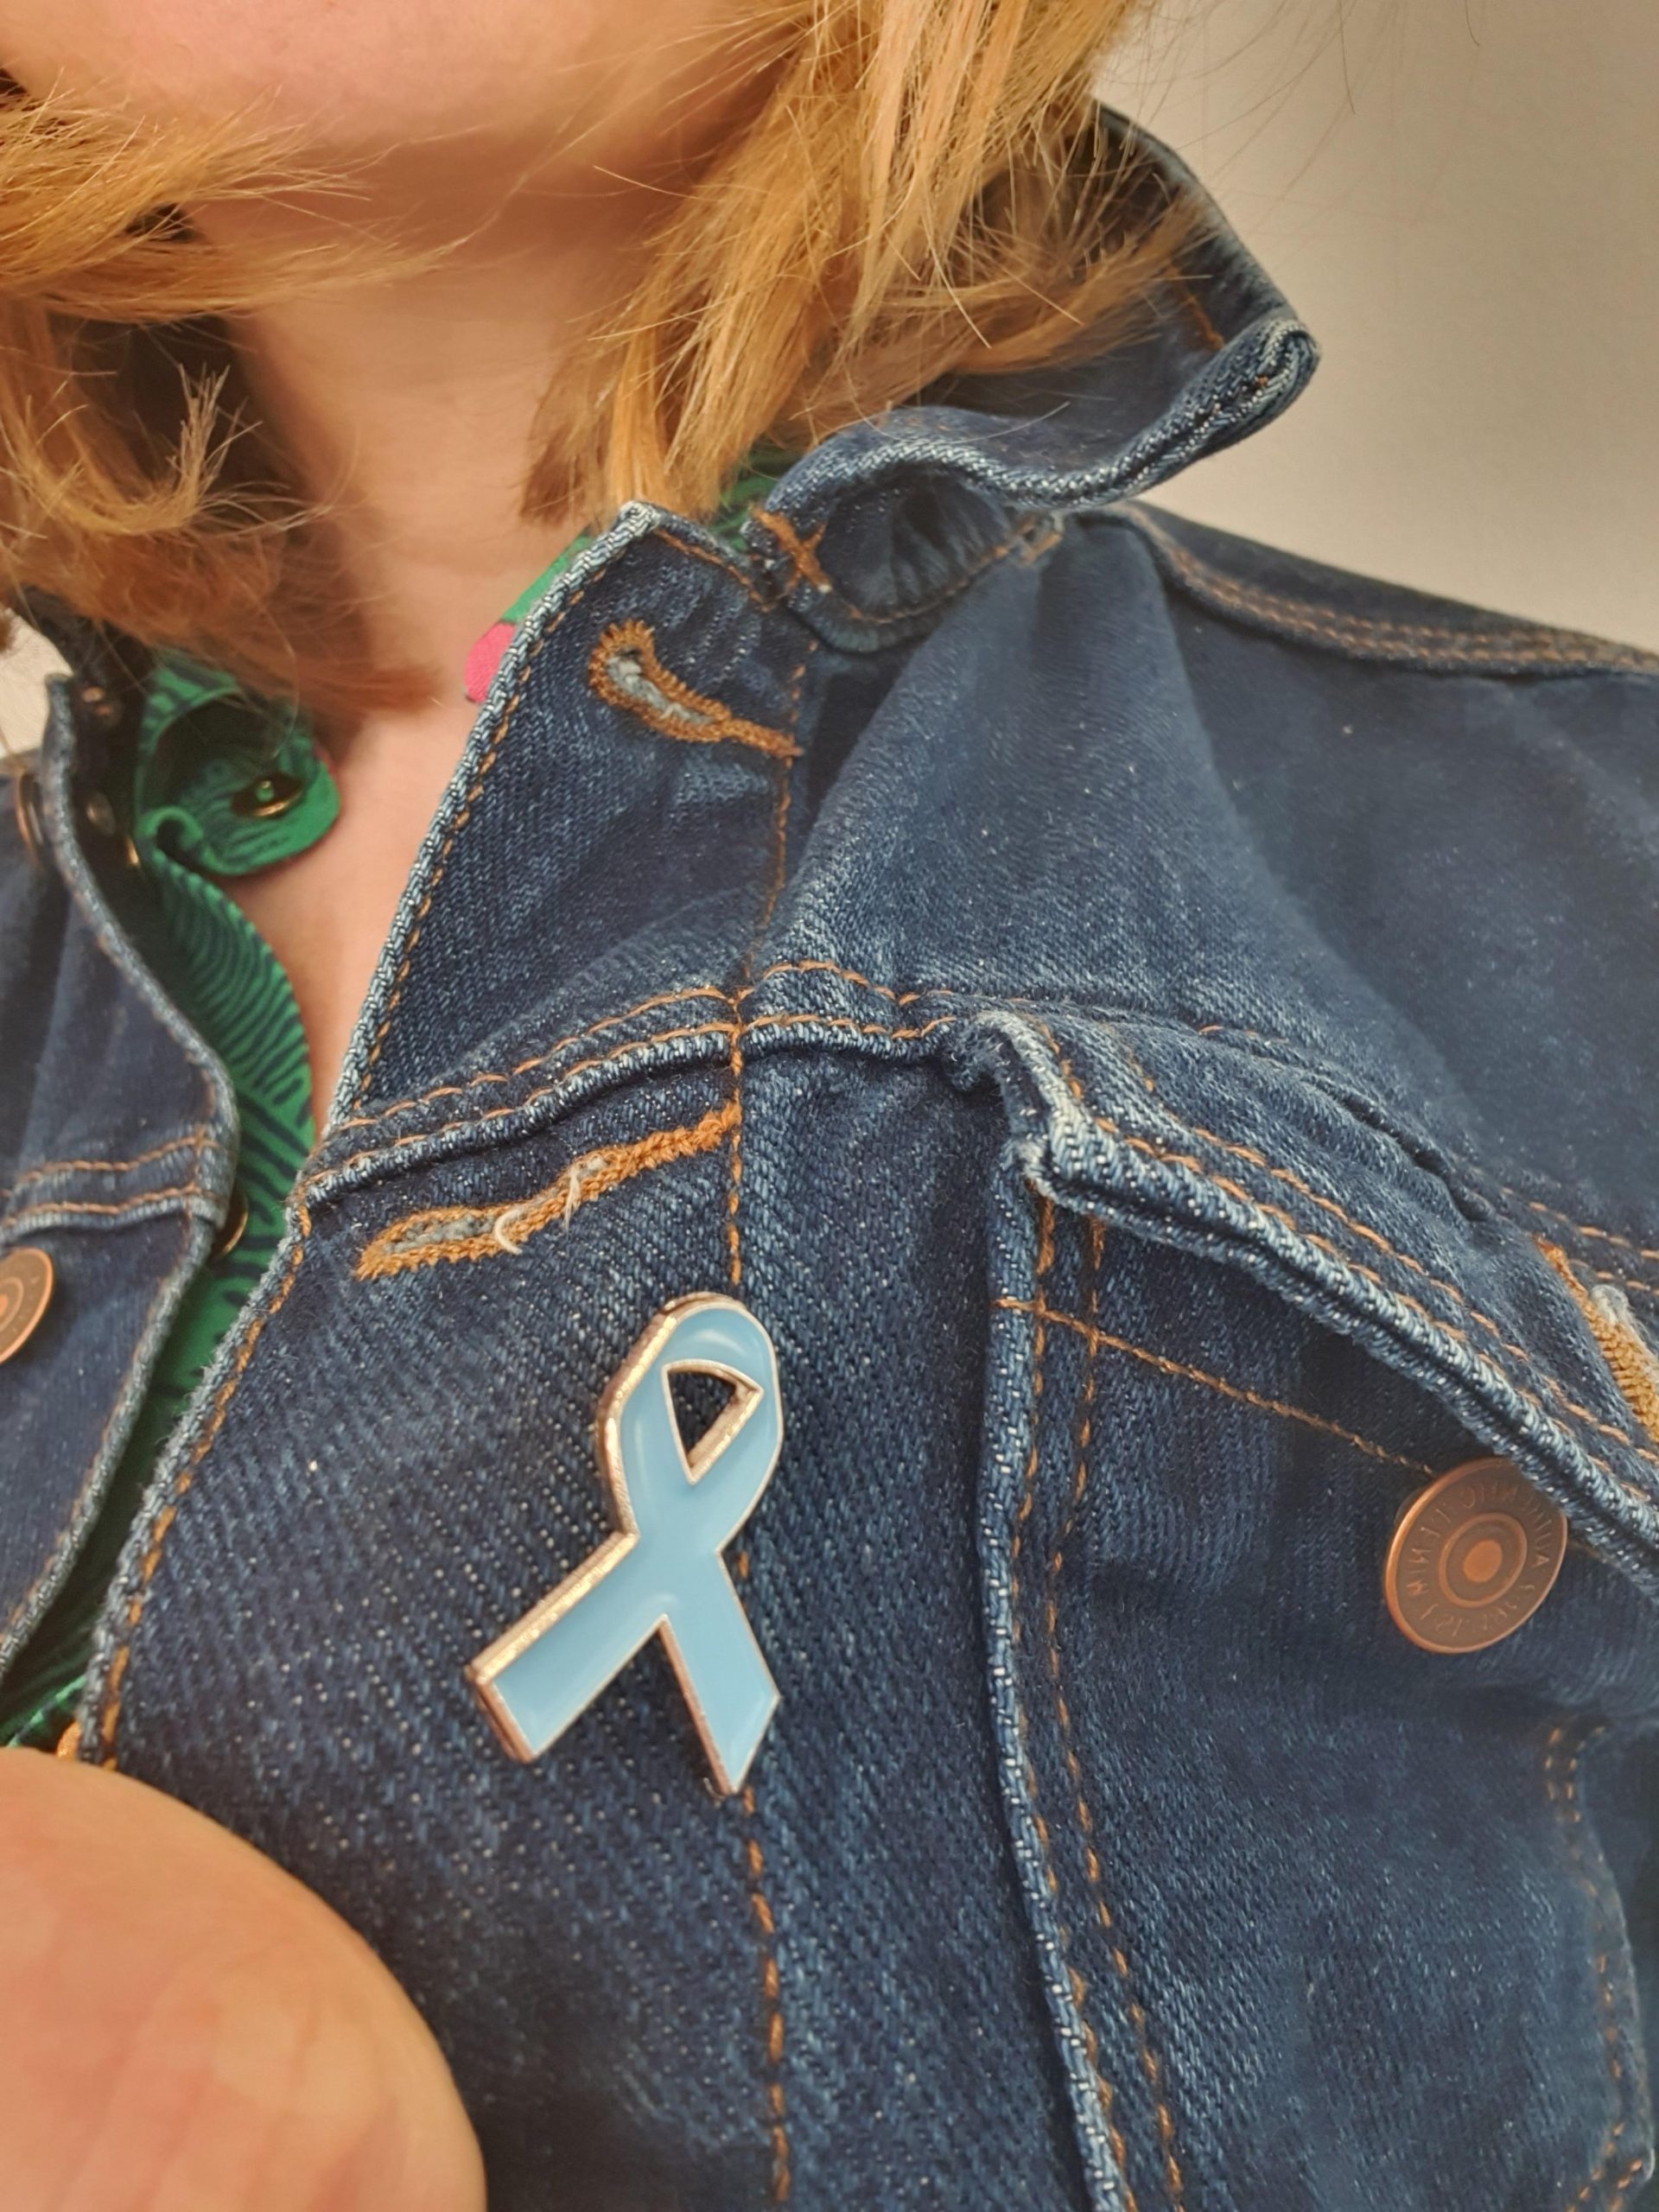 Pale blue dyslexia awareness ribbon pin badge shown on a denim jacket.